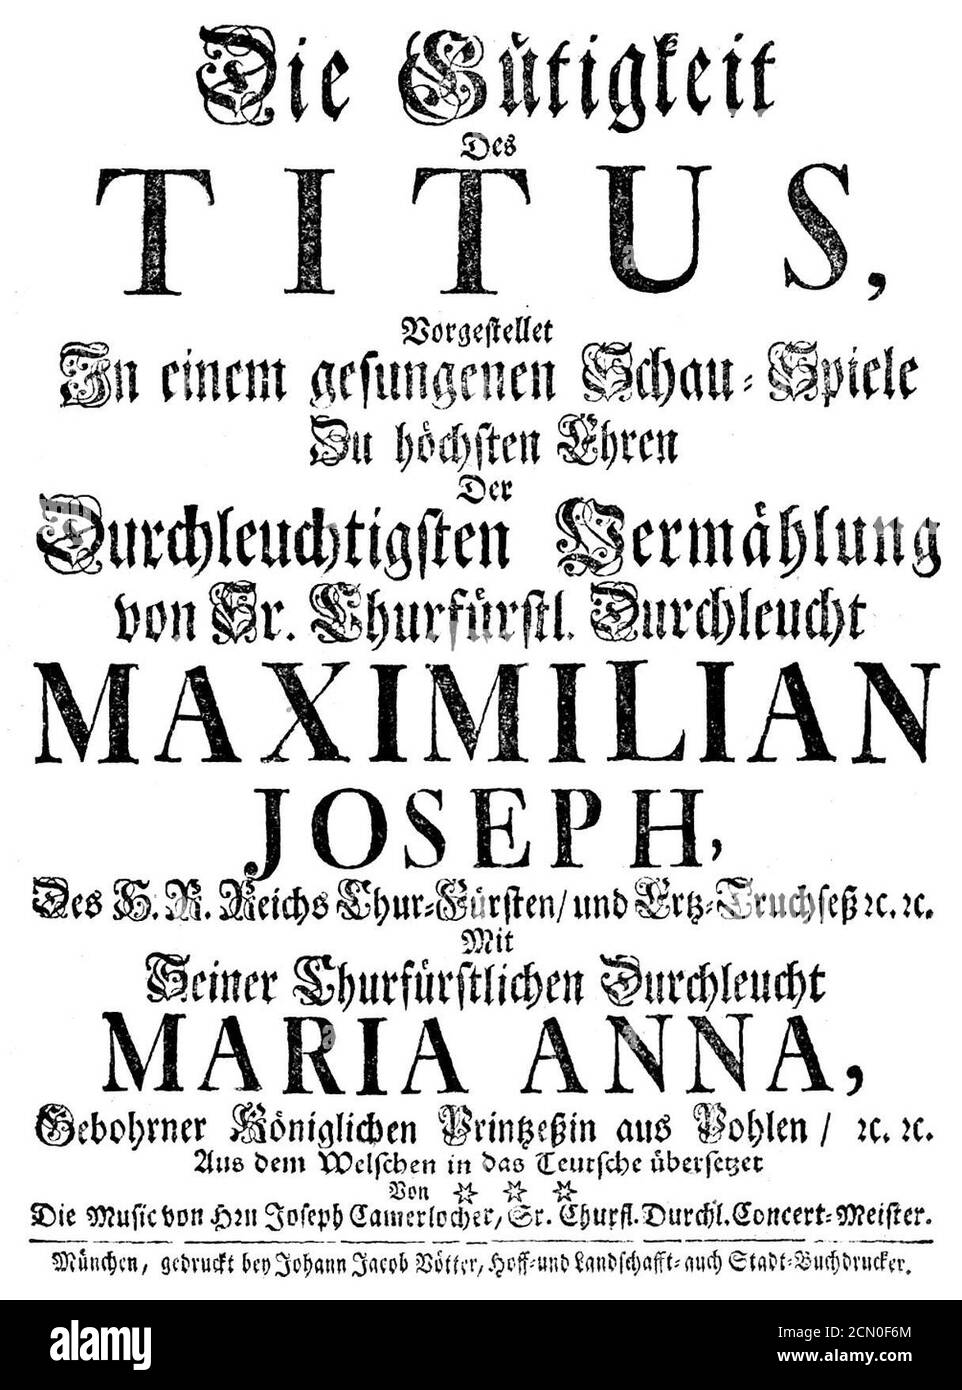 Joseph Anton Camerloher - La Clemenza di Tito - german titlepage of the libretto - Munich 1747. Stock Photo